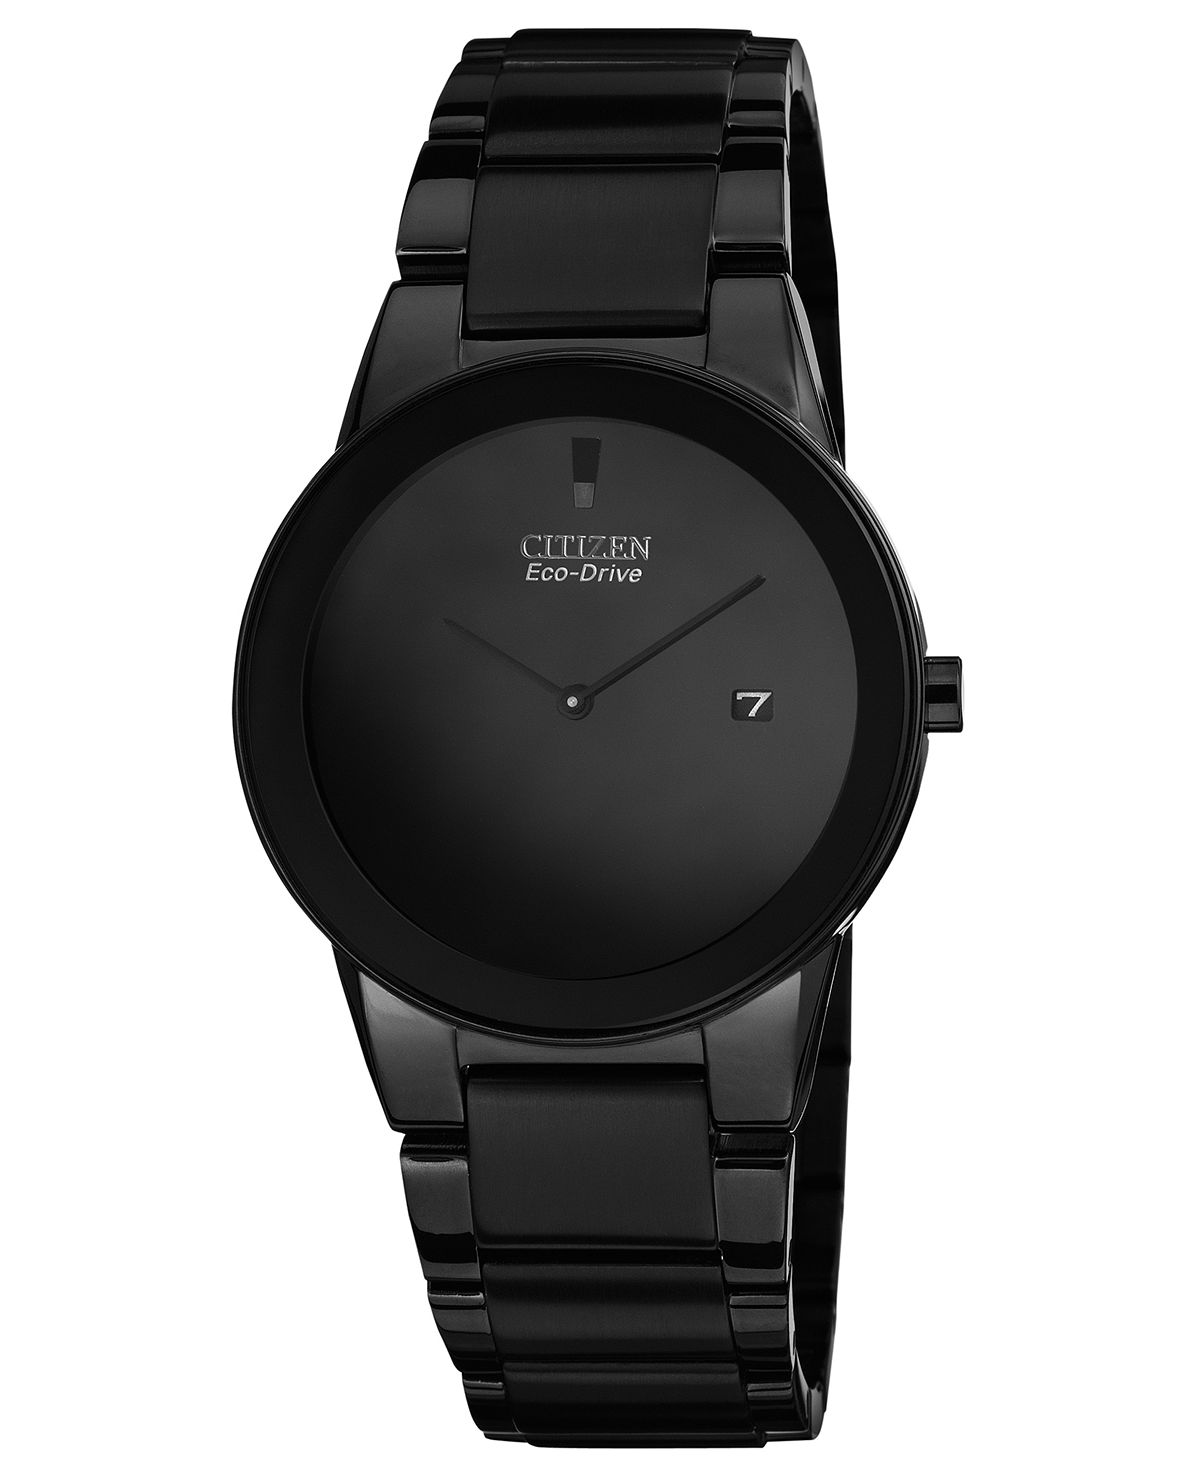 Мужские часы Eco-Drive Axiom, черные часы-браслет из нержавеющей стали с ионным покрытием, 40 мм, AU1065-58E Citizen часы citizen ca4010 58e